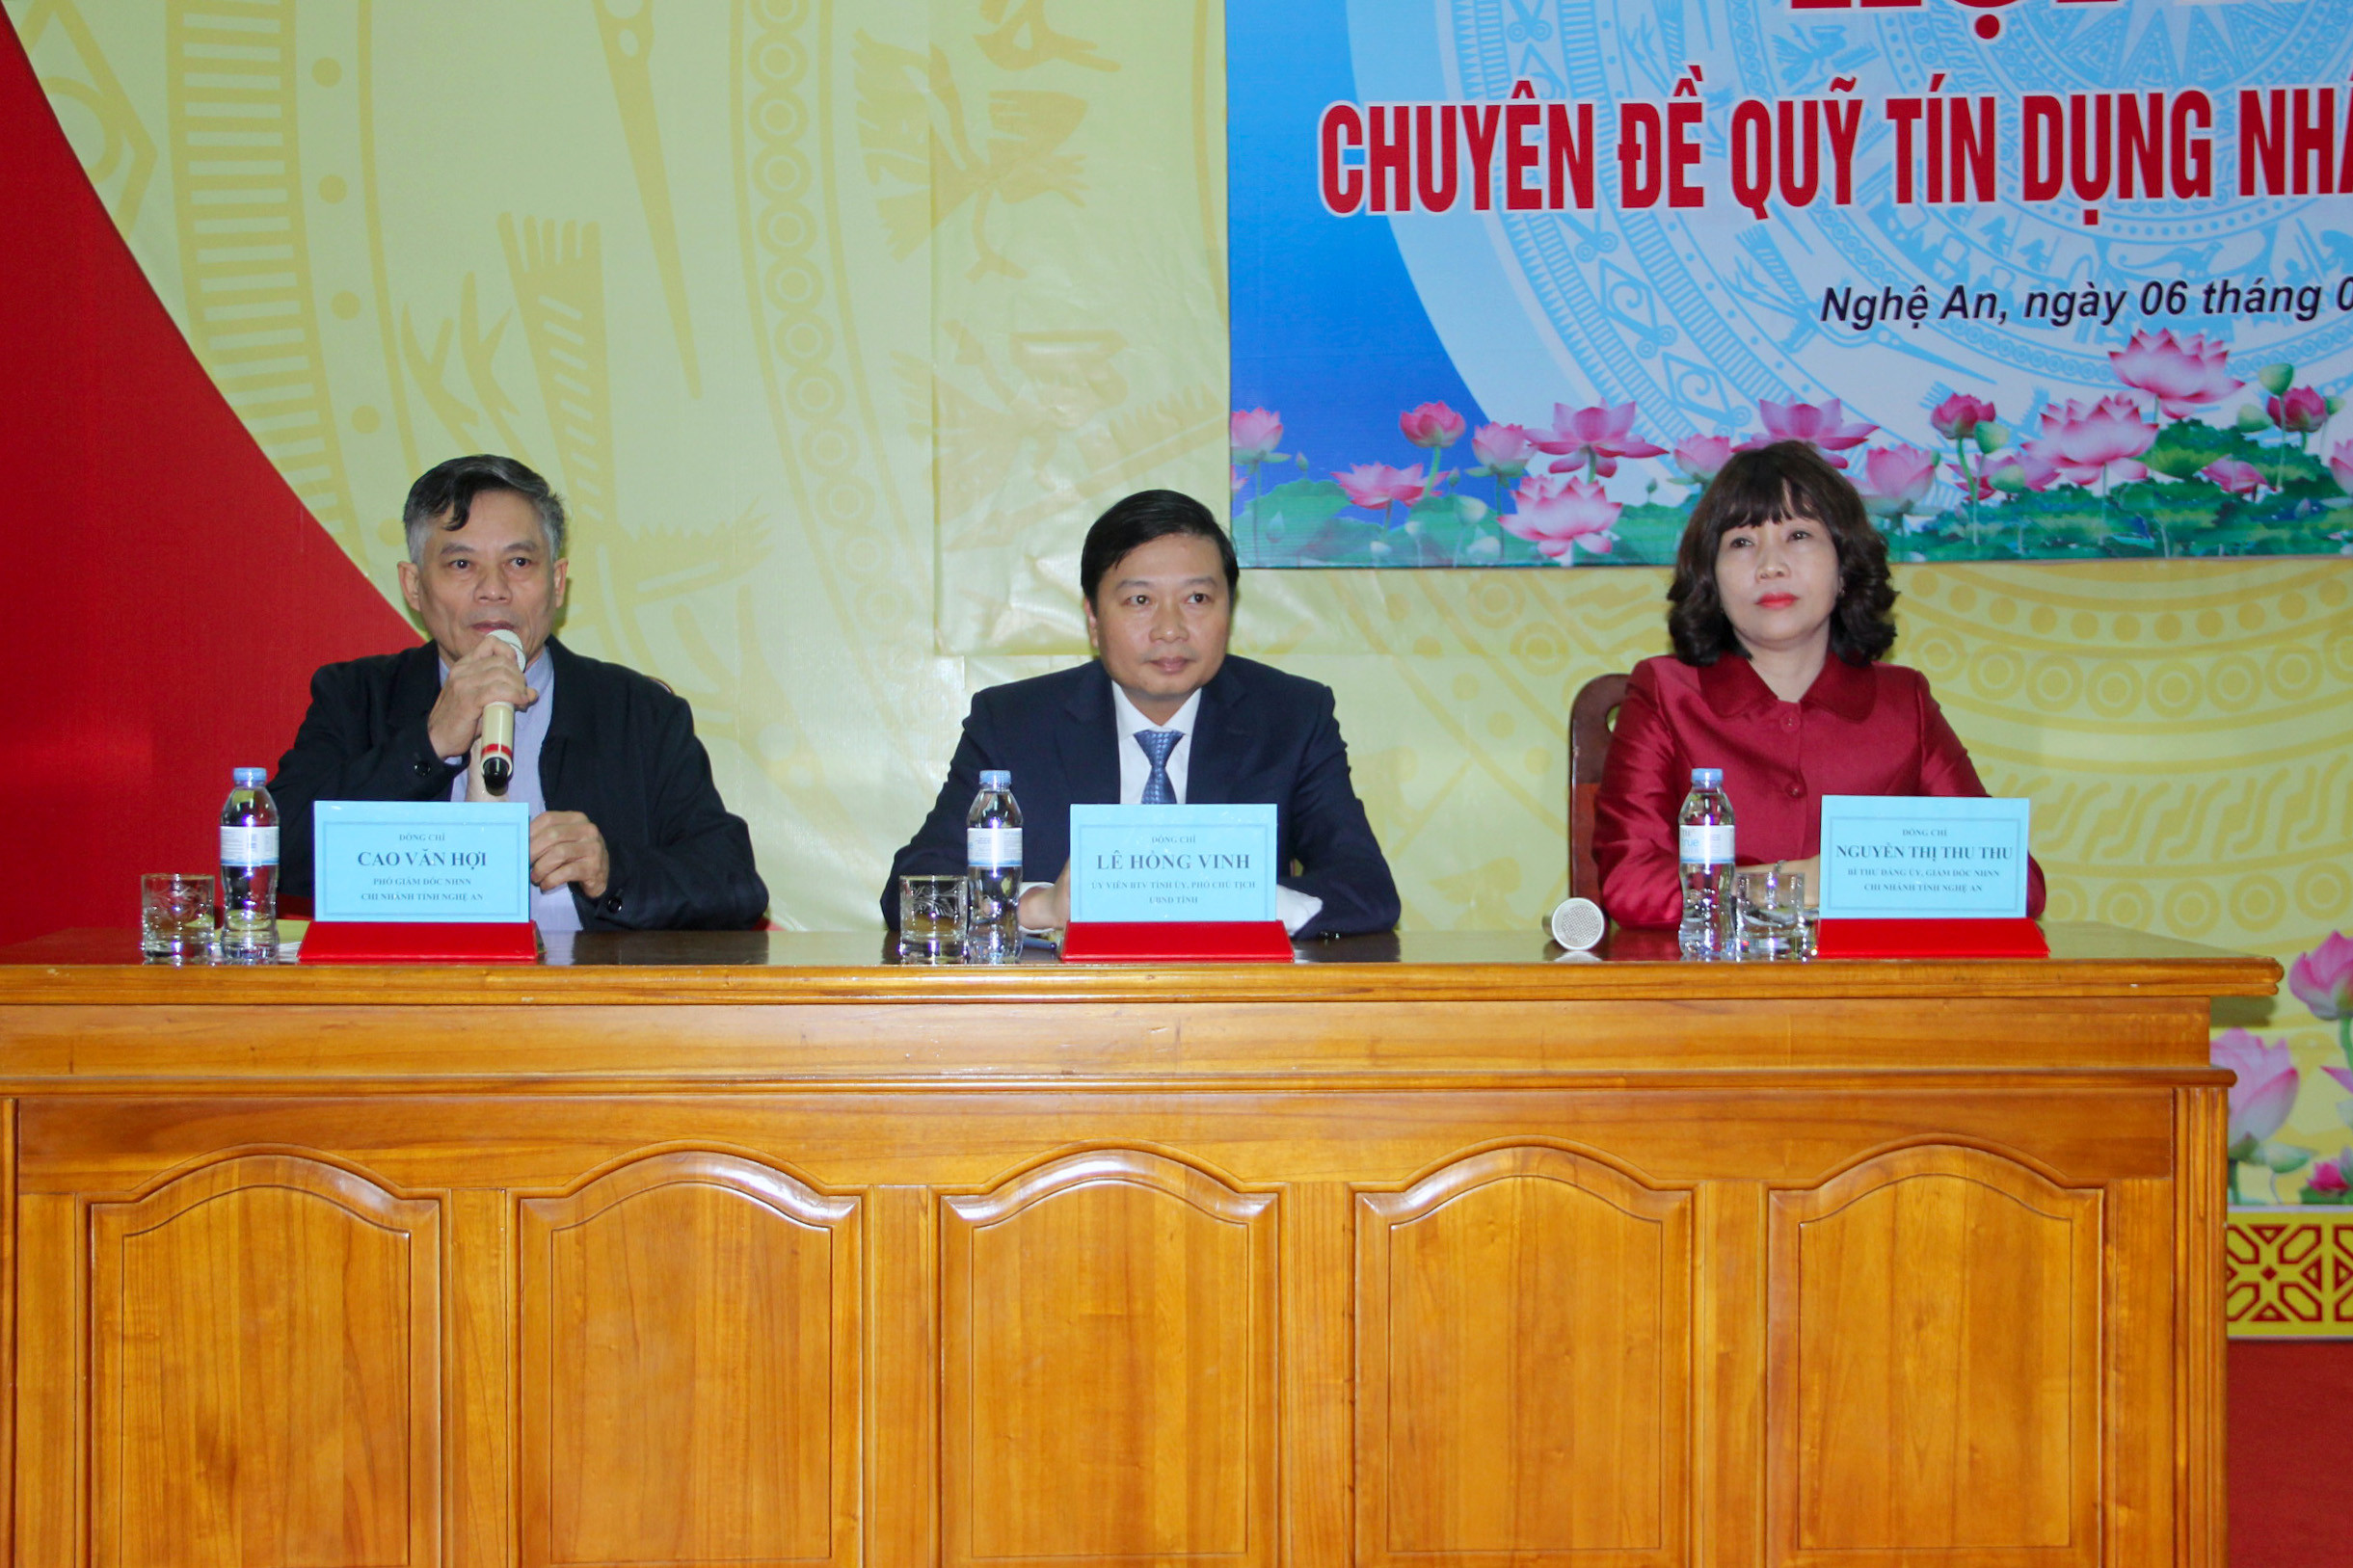 Đó là ý kiến chỉ đạo của phó chủ tịch UBND tỉnh Lê Hồng Vinh tại hội nghị chuyên đề Quỹ tín dụng nhân dân năm 2020 do Ngân hàng NN chi nhánh Nghệ An tổ chức chiều 6/1 tại thành phố Vinh.